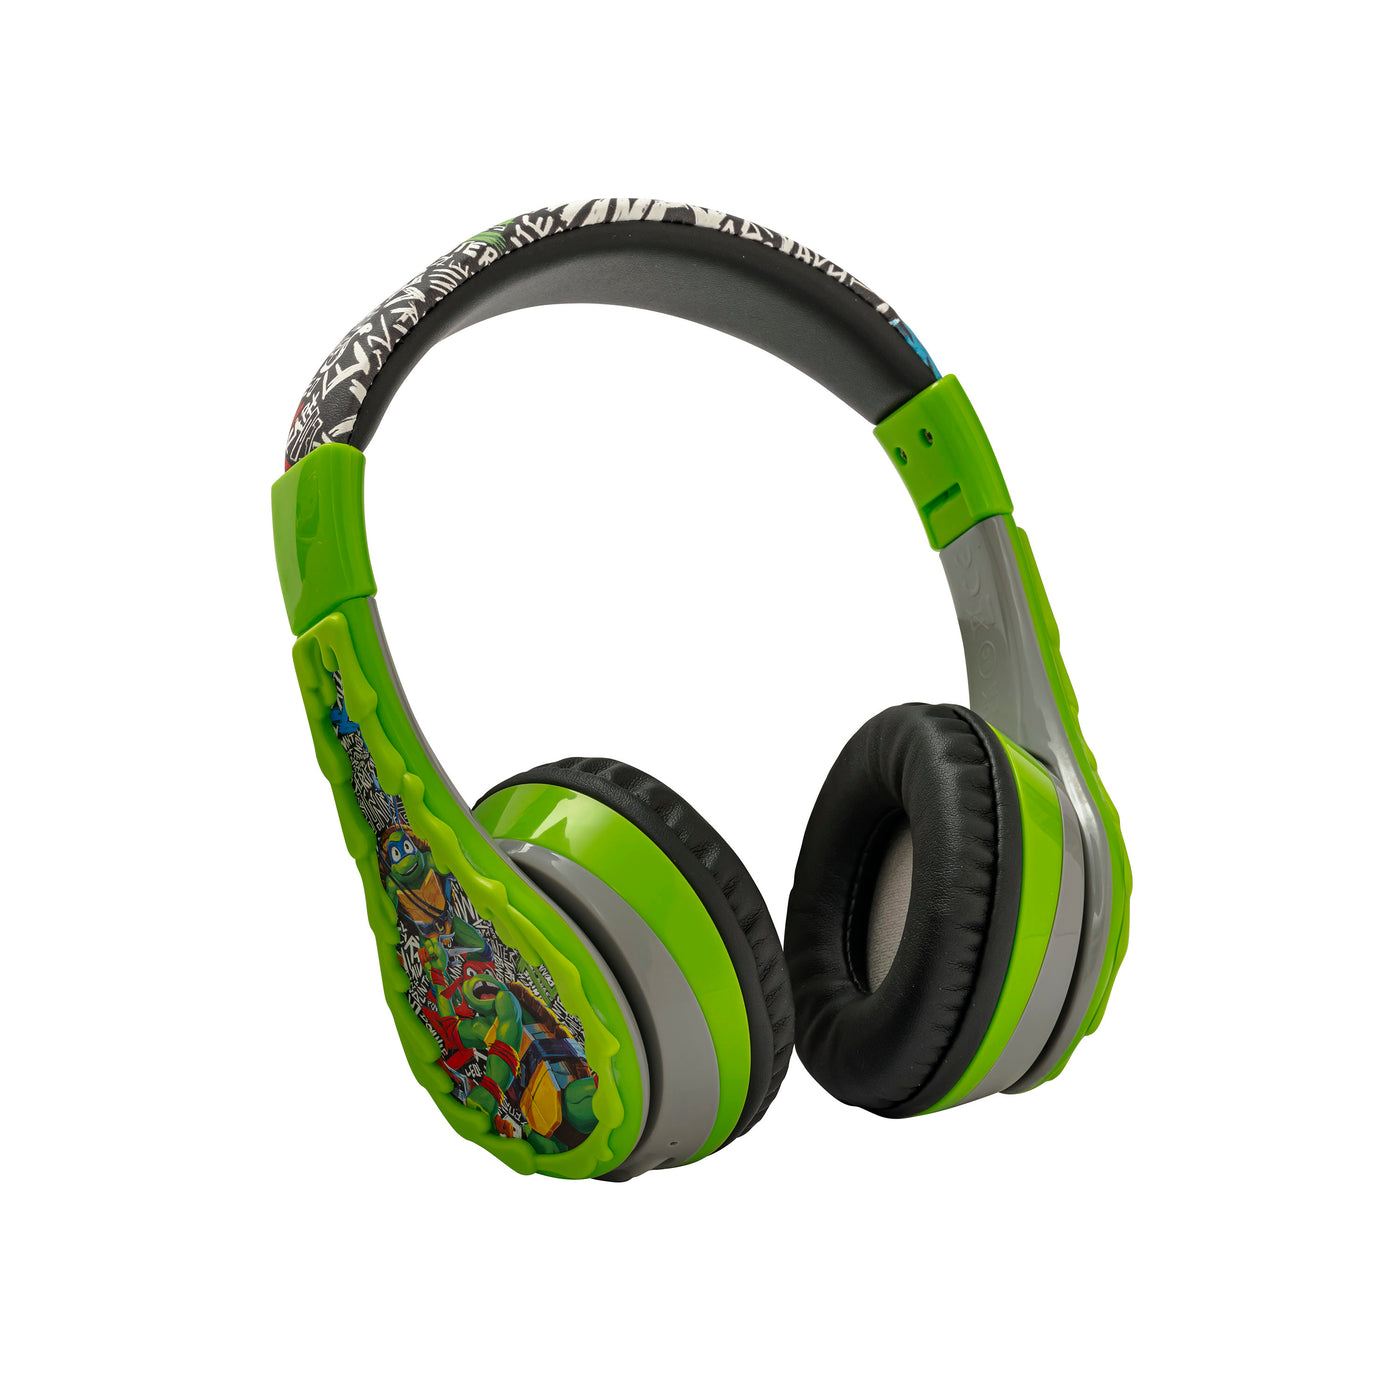 Teenage Mutant Ninja Turtles Wireless Headphones for Kids